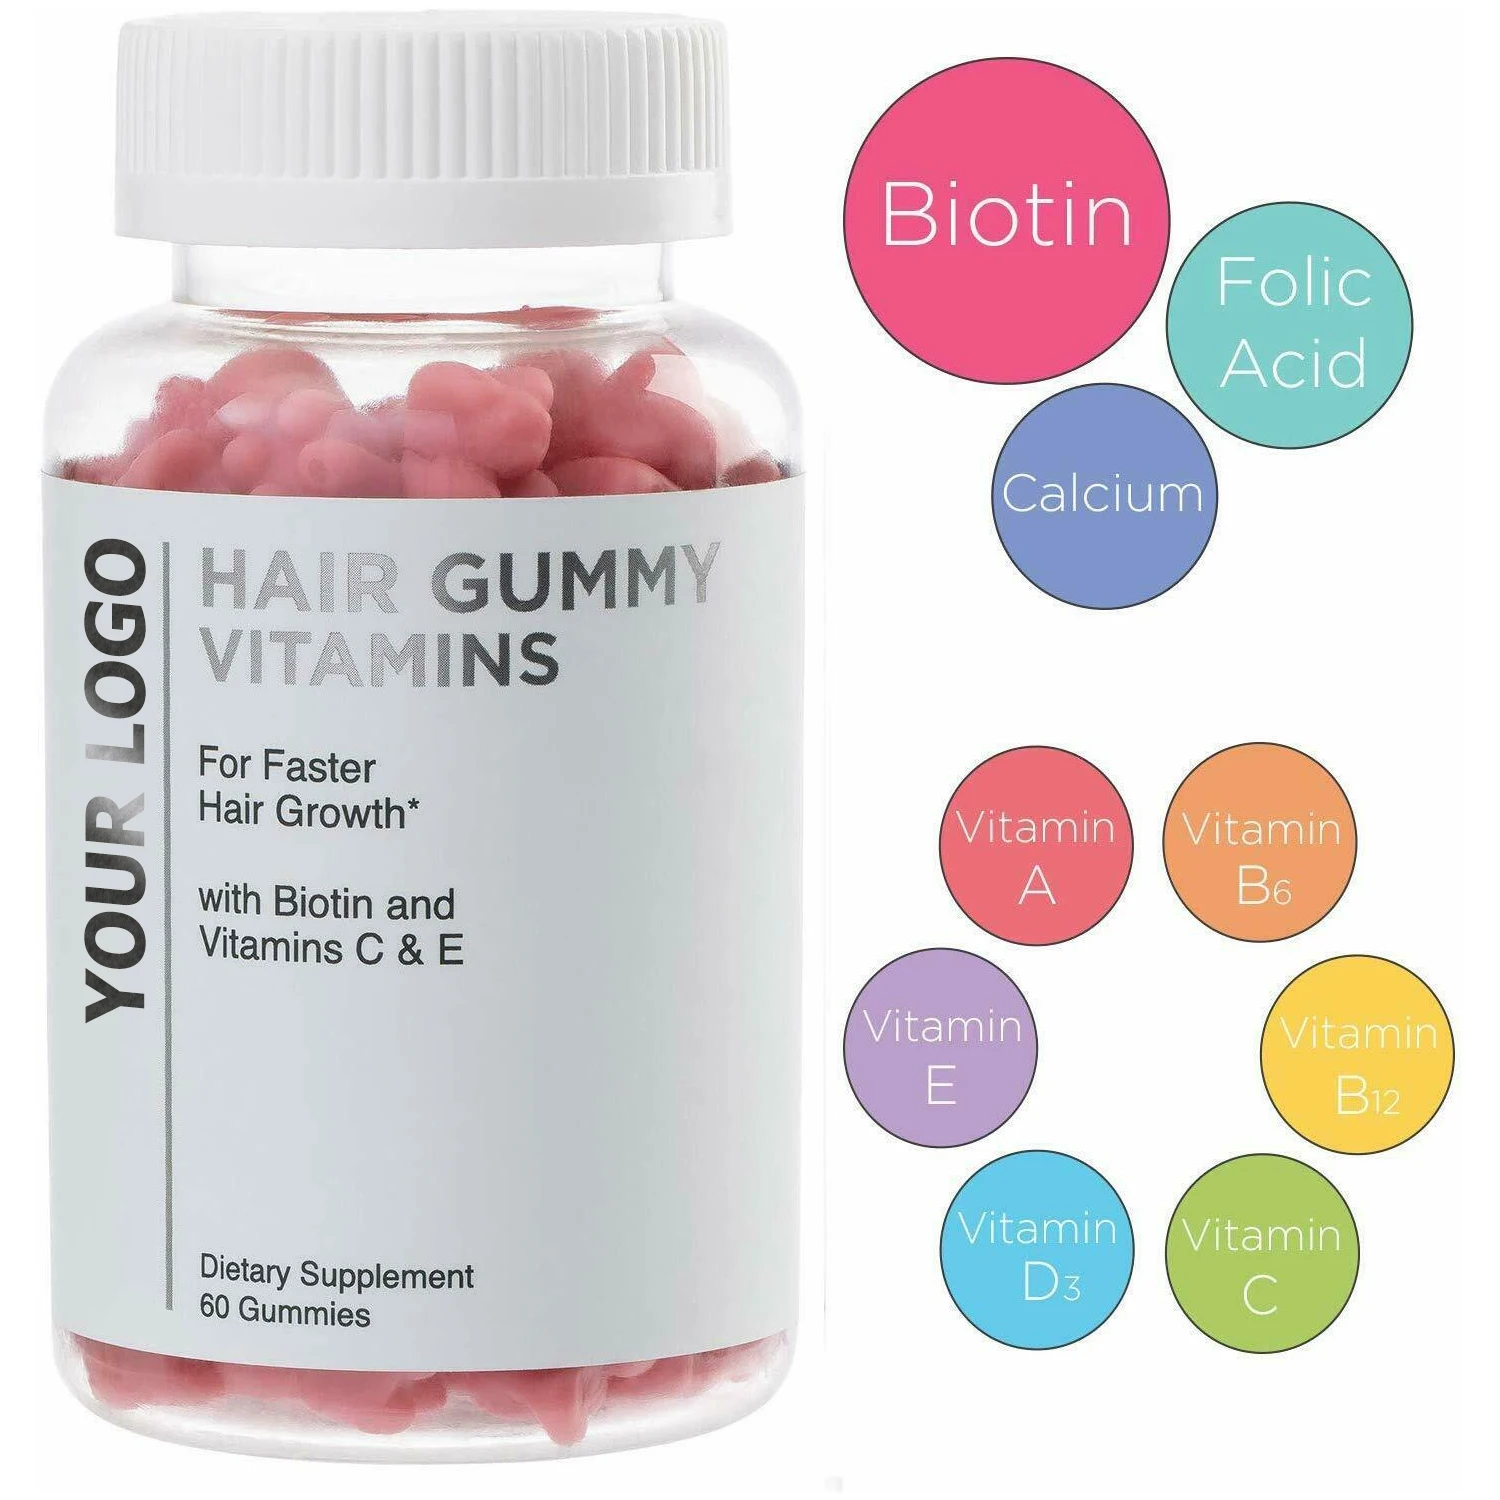 منشار تعليق افتراضية  Hot Selling Premium Bear Hair Vitamins Gummies With Biotin 5000 Mcg Vitamin  C & E Support Hair Growth - Buy Premium Vegetarian Non Gmo Hair Gummies  Vitamins For Hair Grown Stronger Beautiful